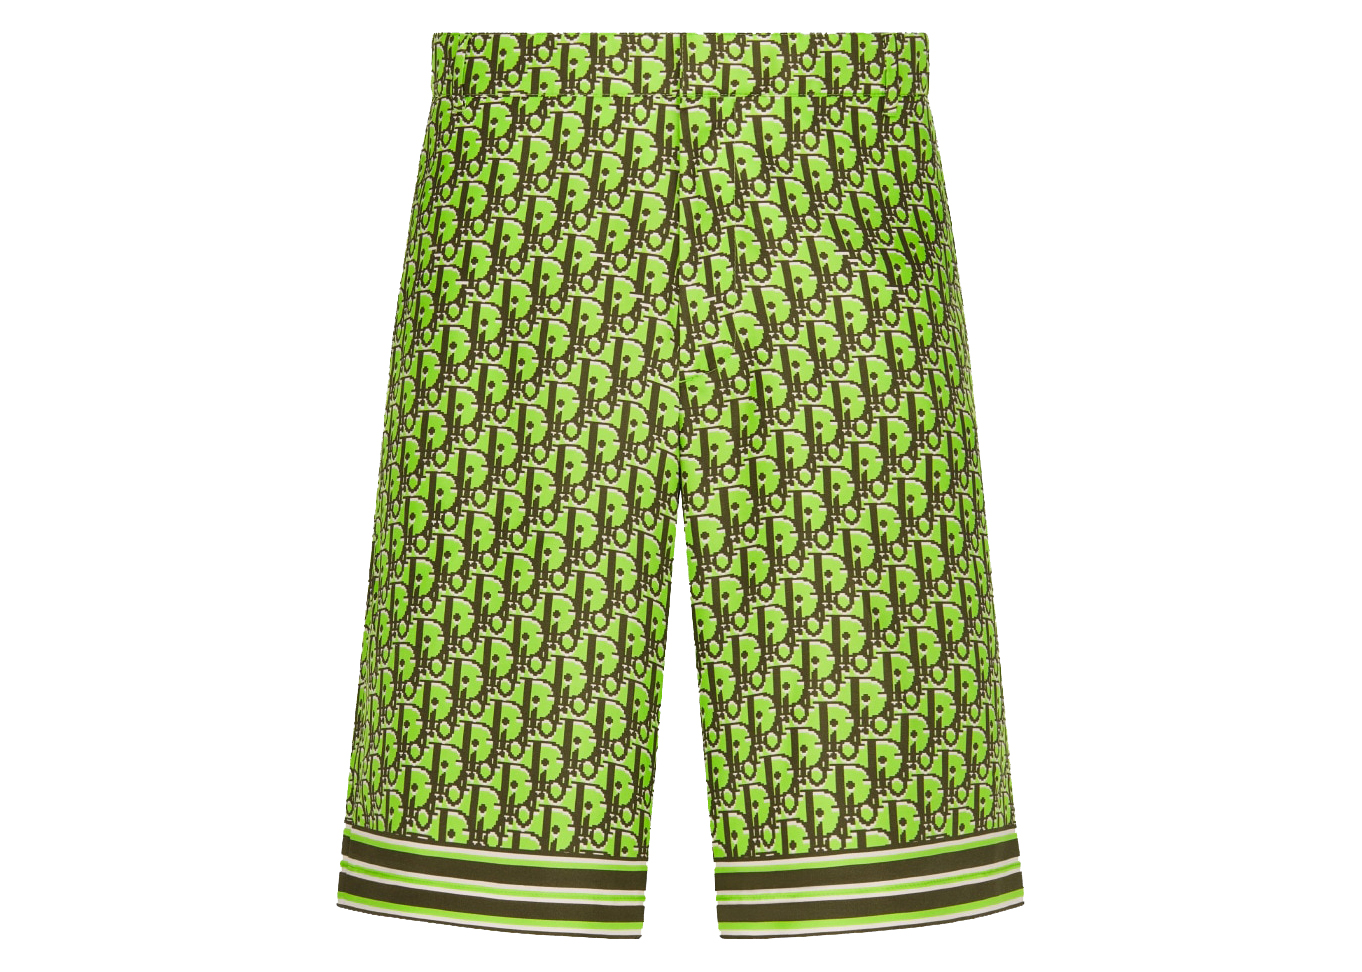 Dior x CACTUS JACK Dior Oblique Pixel Bermuda Shorts Fluorescent Green/Khaki